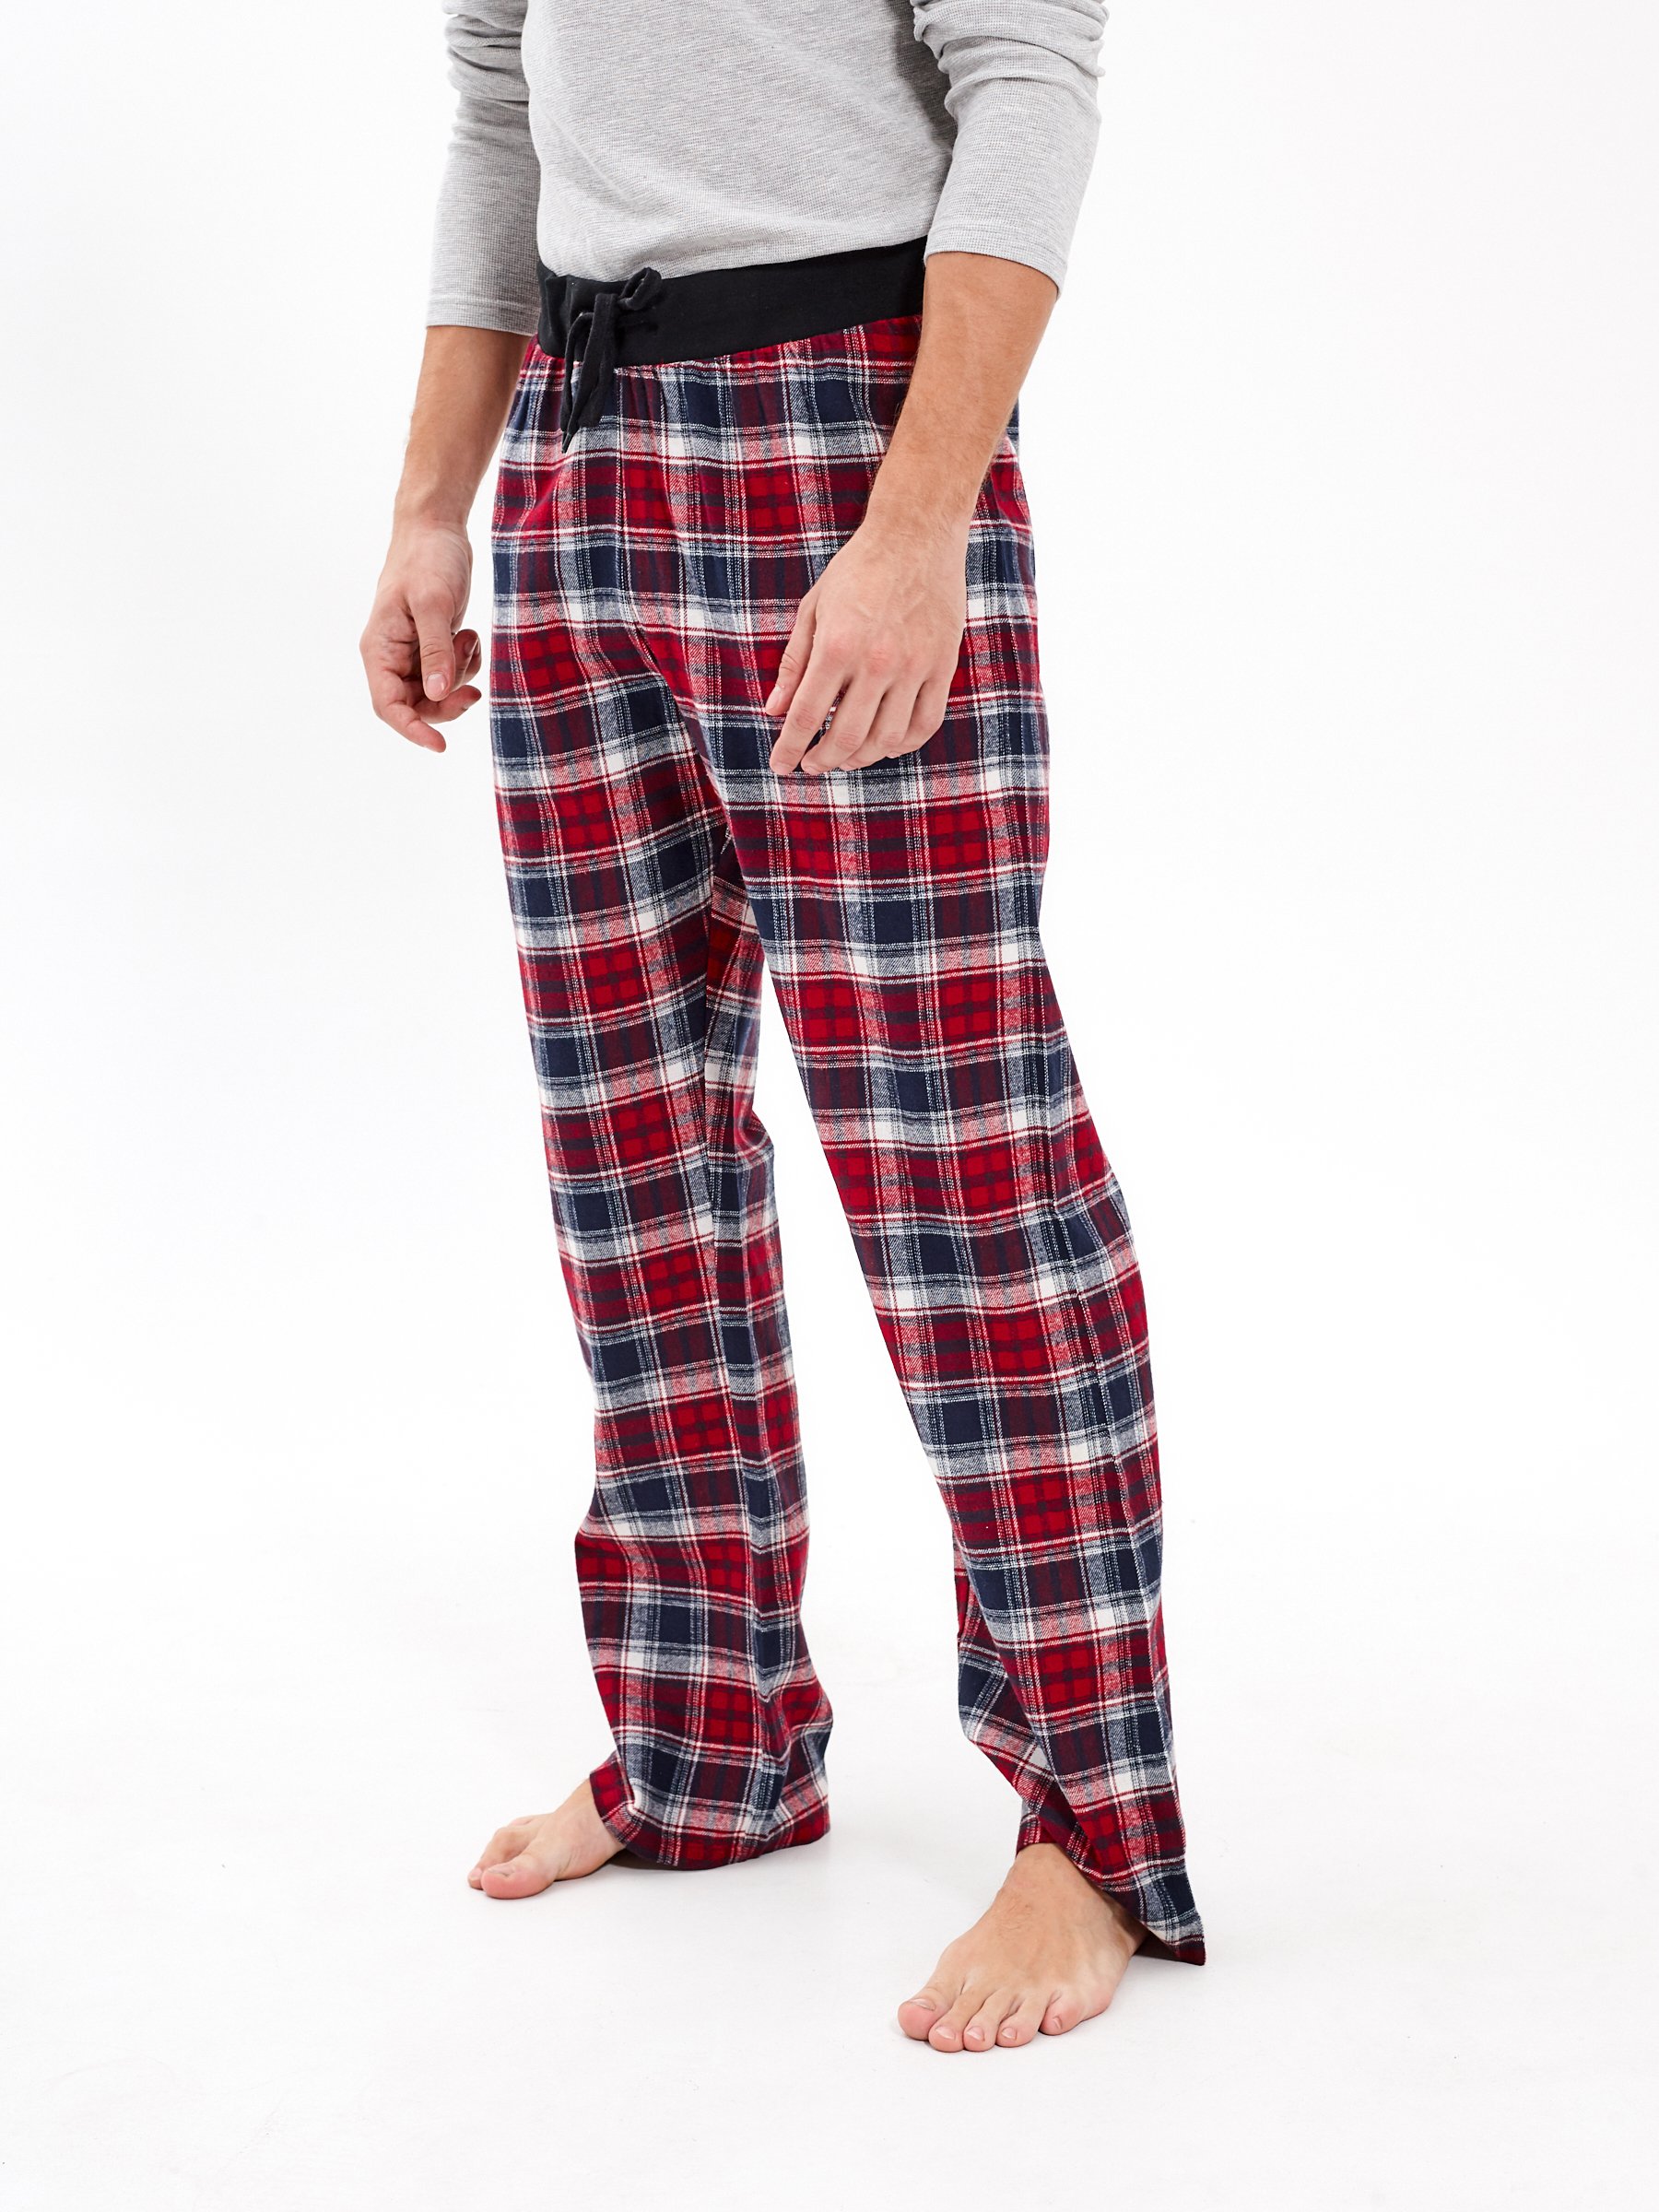 Plaid pyjama